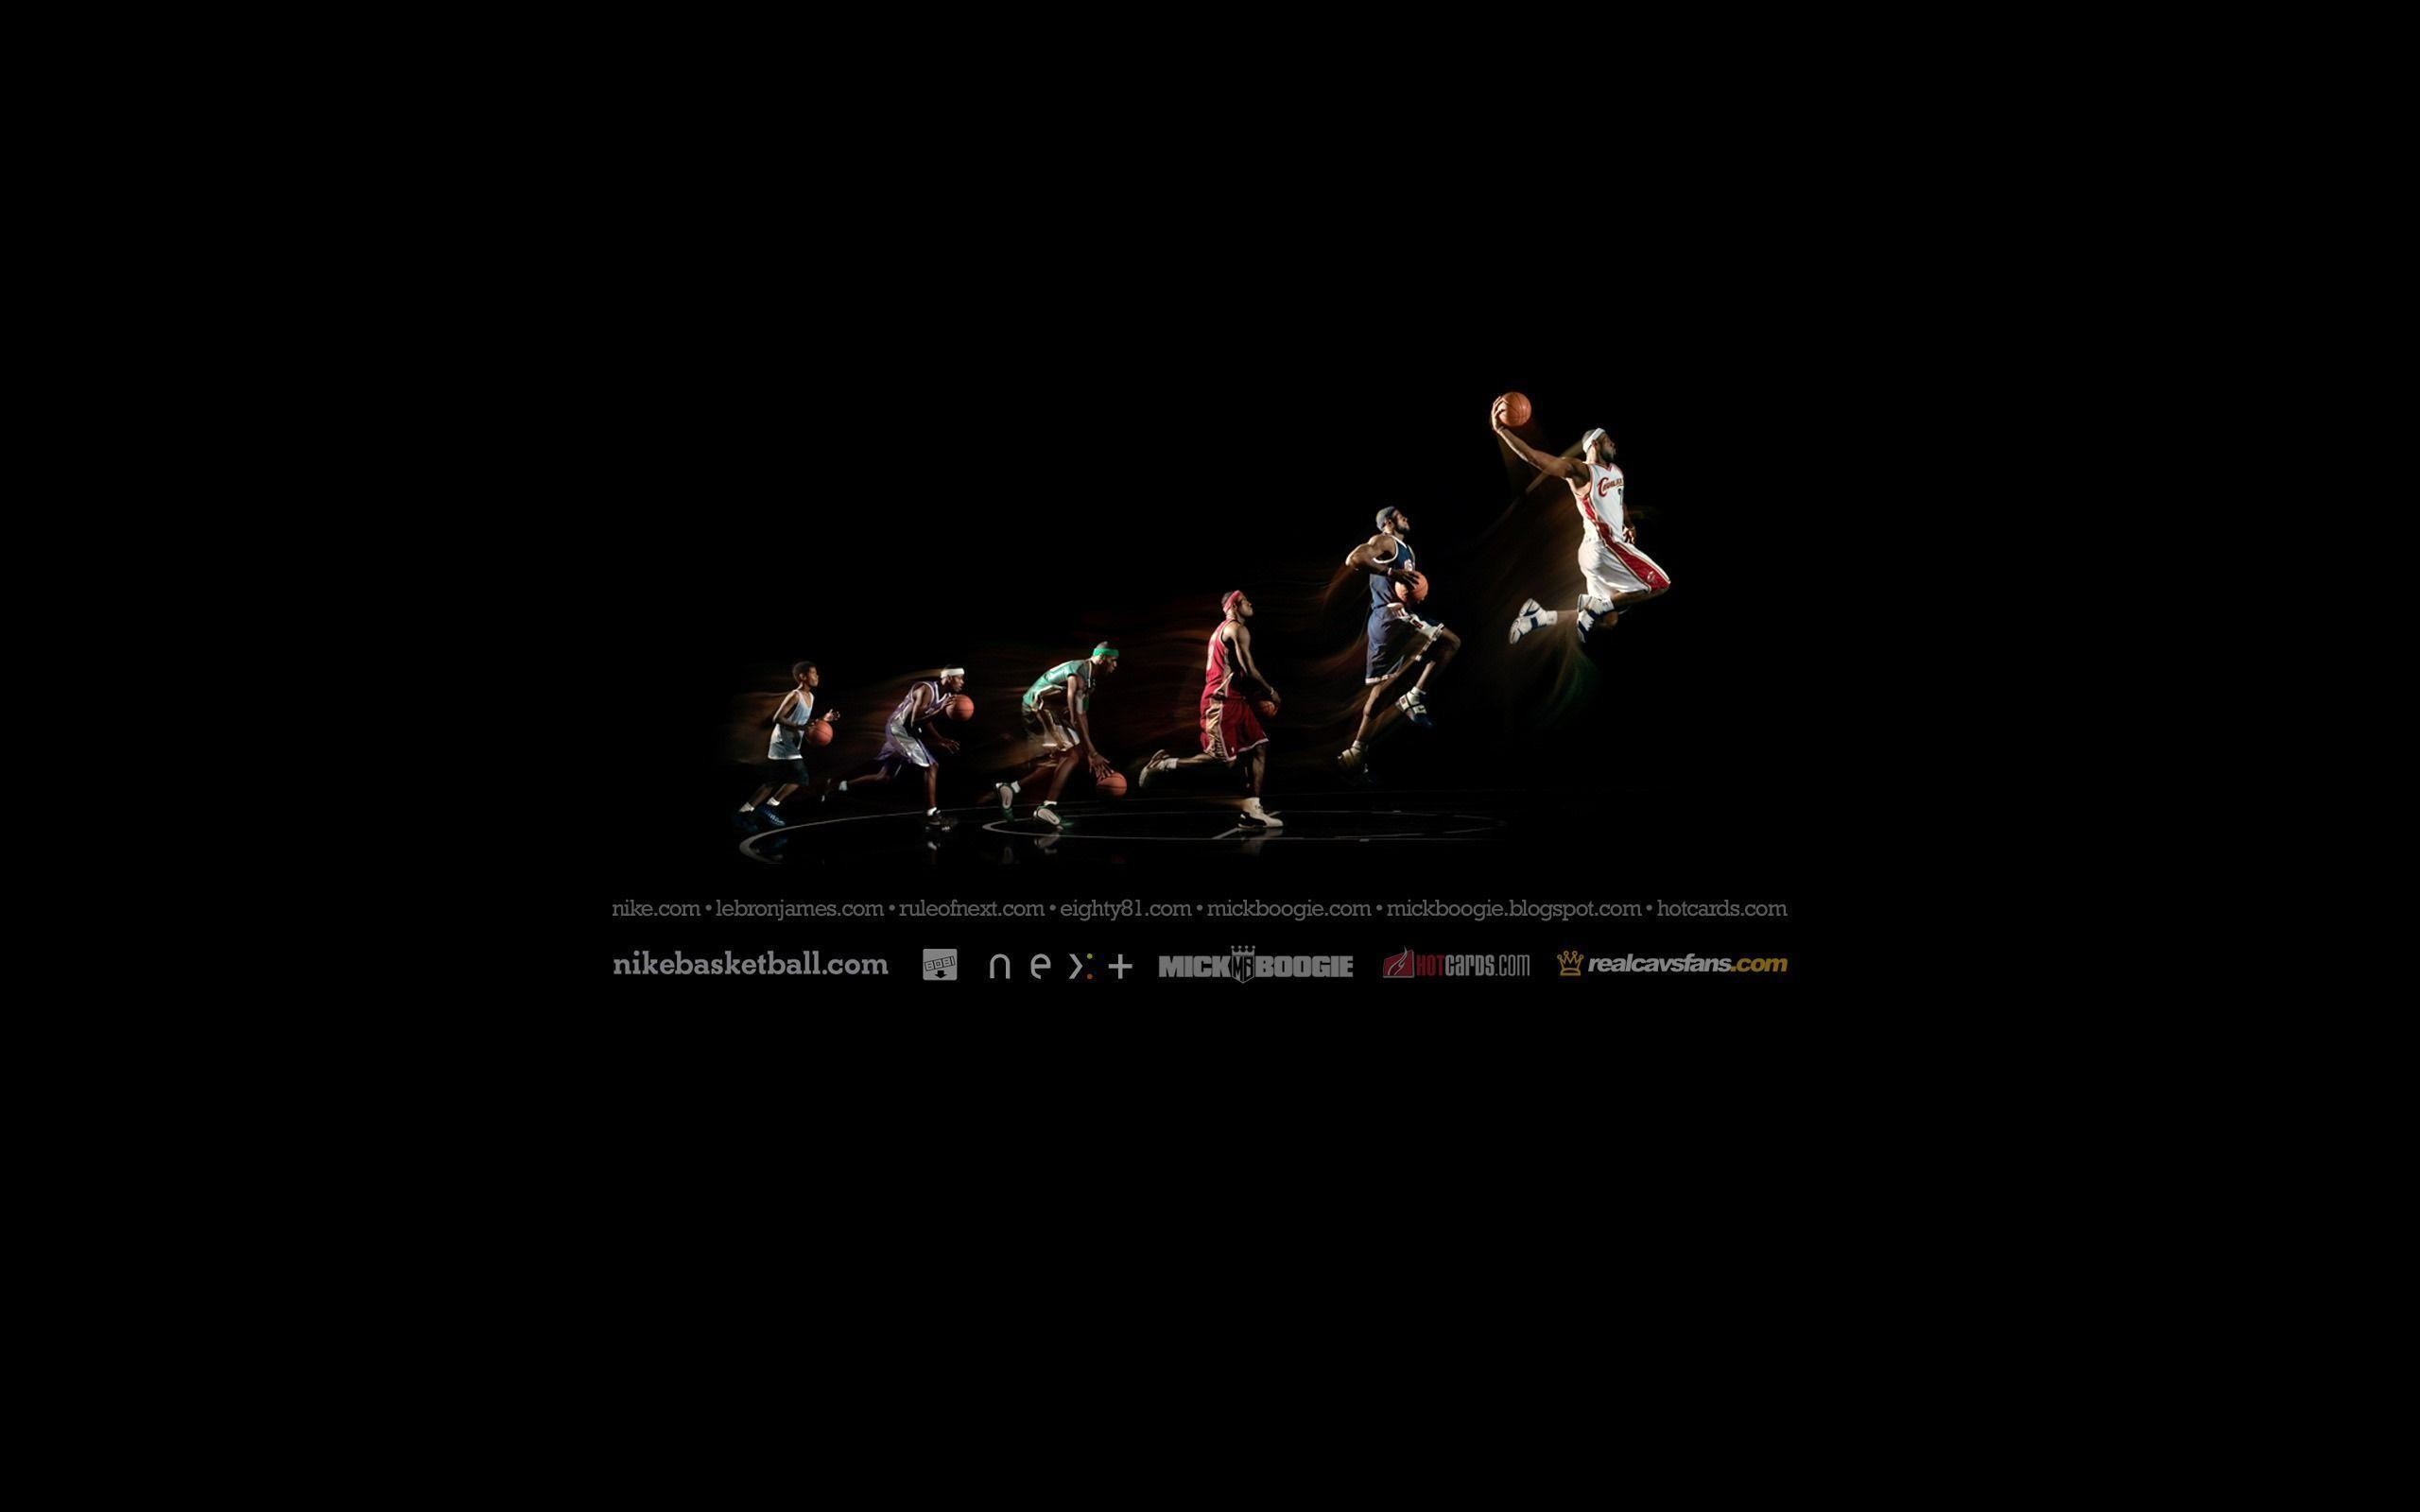 2560x1600 Basketball Desktop Wallpapers - Wallpaper Cave